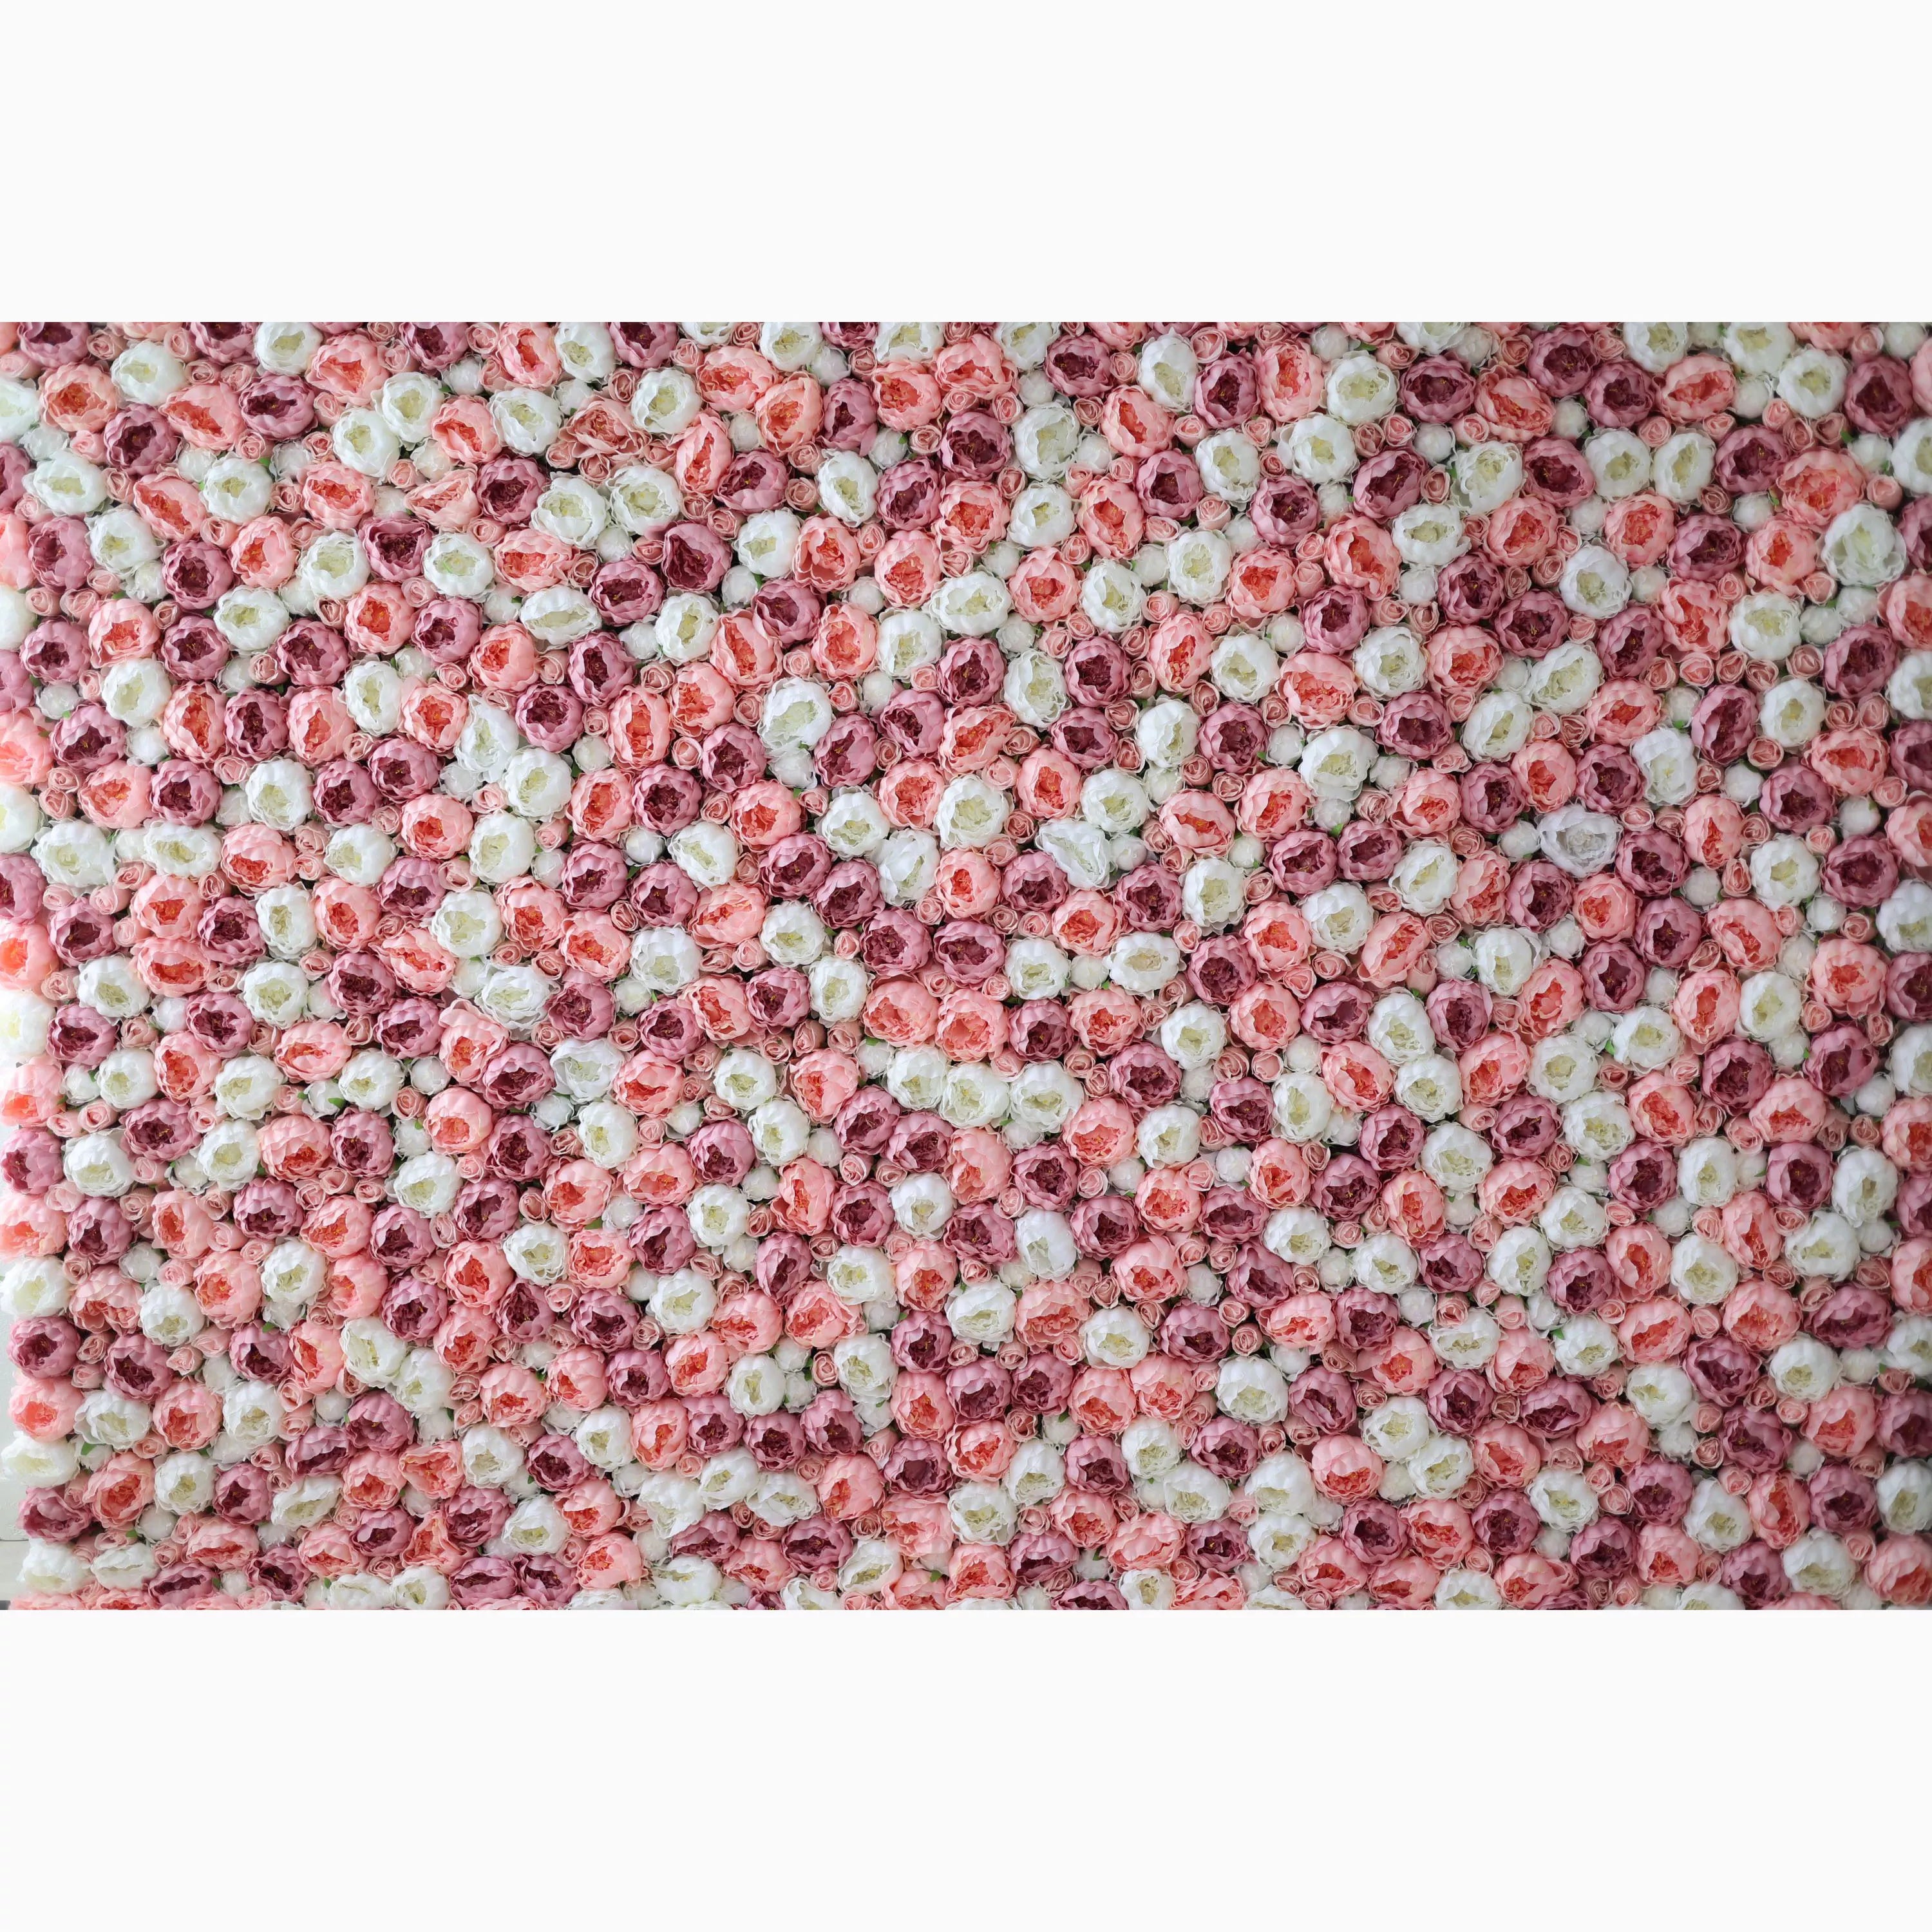 هدايا زهور فالار: أحمر خدود وهمس-مجموعة حالمة من الورود الفاتحة الوردية والكريمية-جدار زهور مثالي لحفلات الزفاف والمناسبات والديكور الداخلي الأنيق.